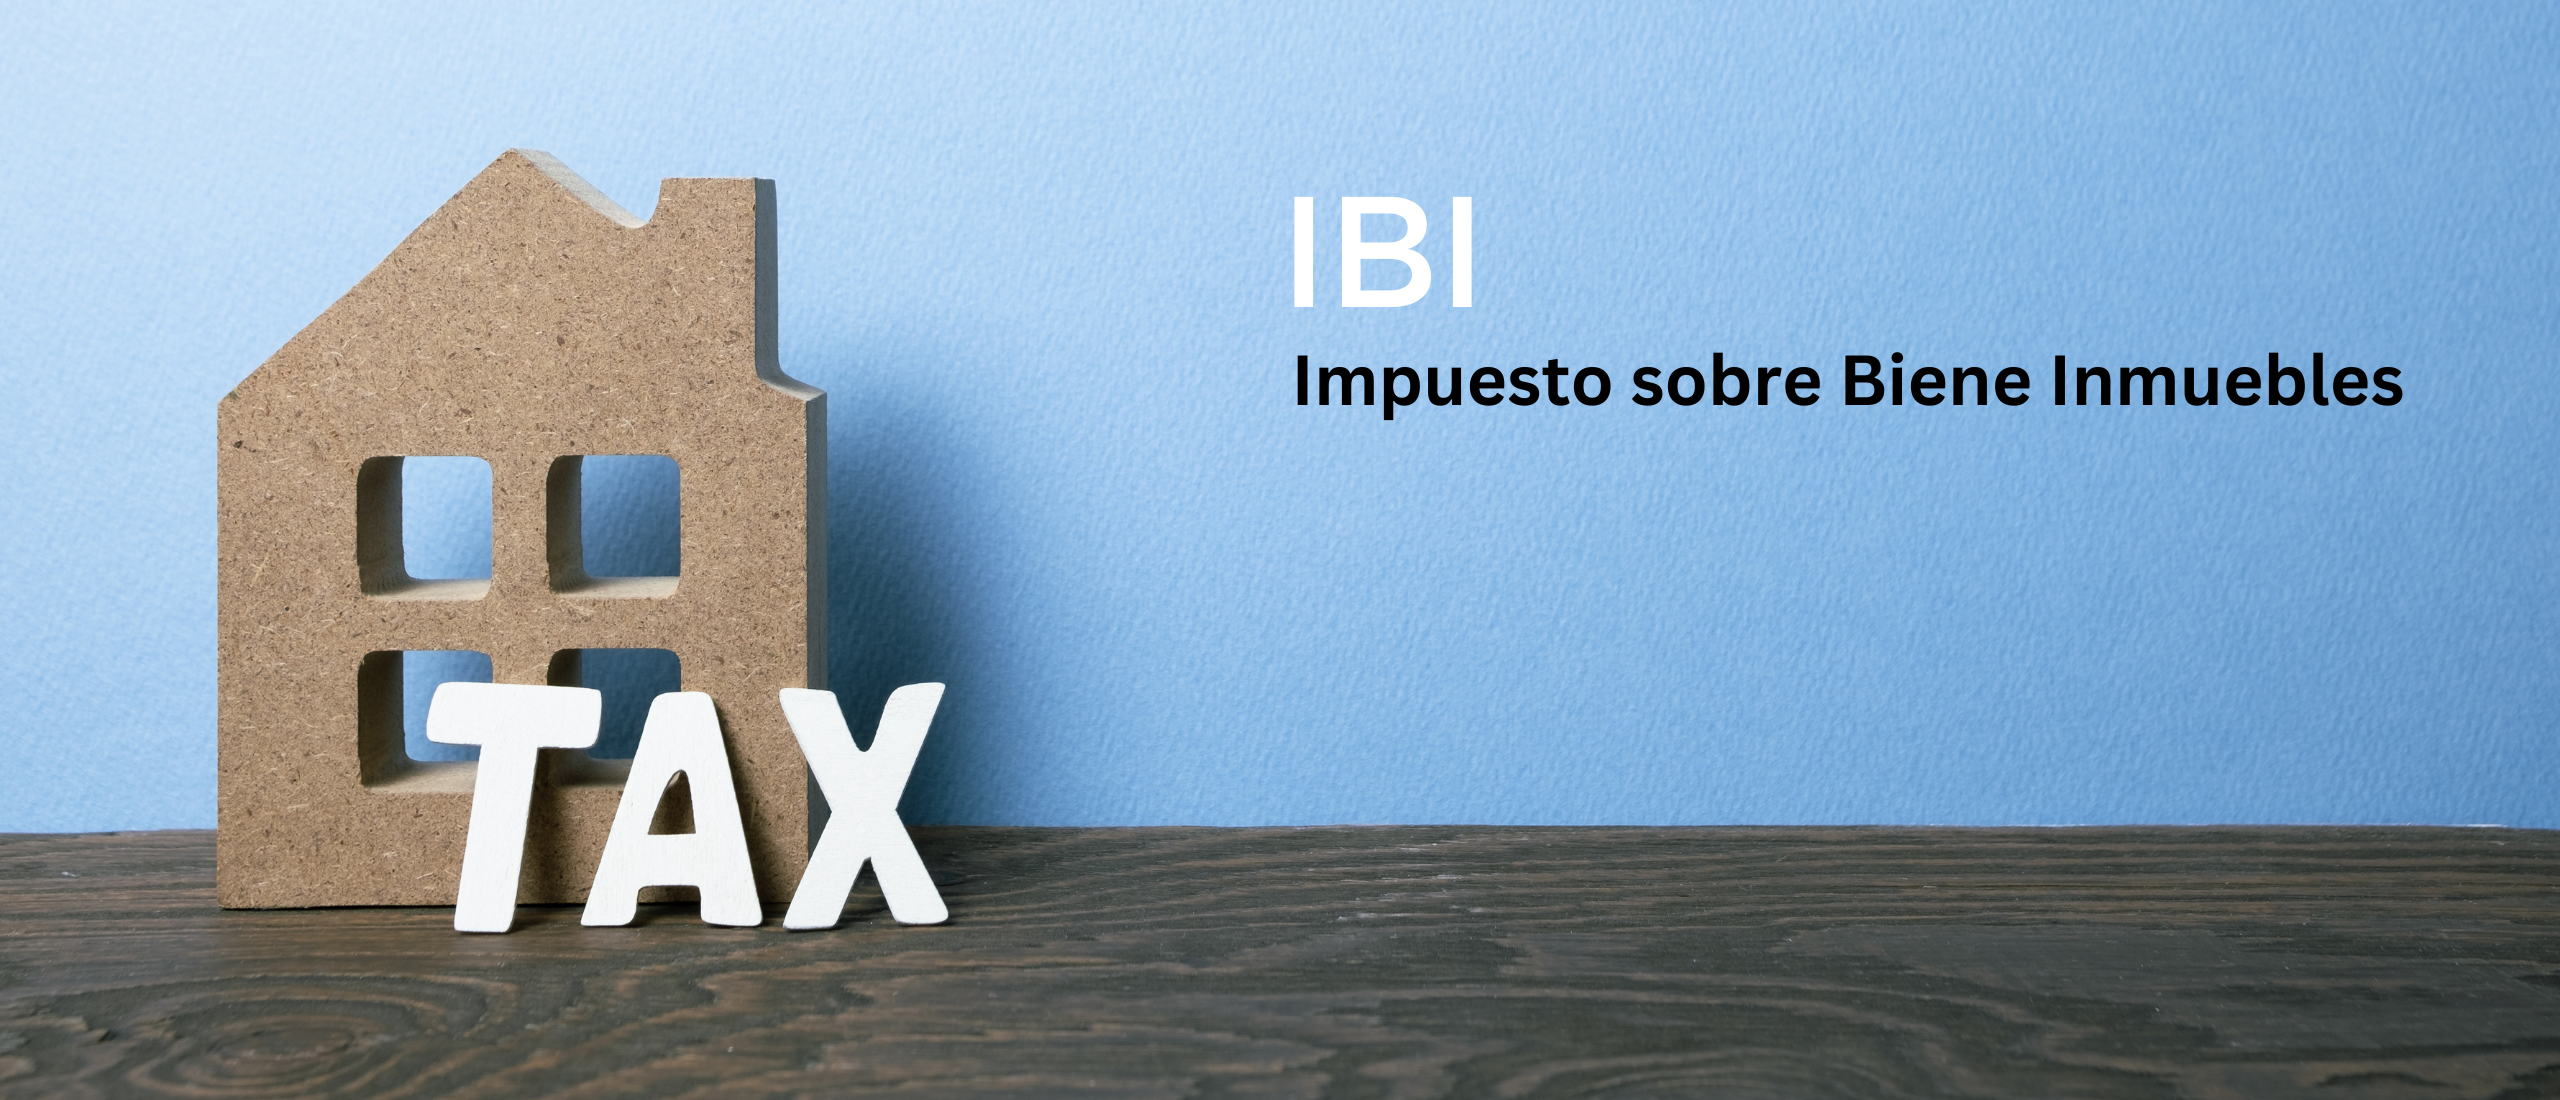 IBI, de onroerendgoedbelasting in Spanje